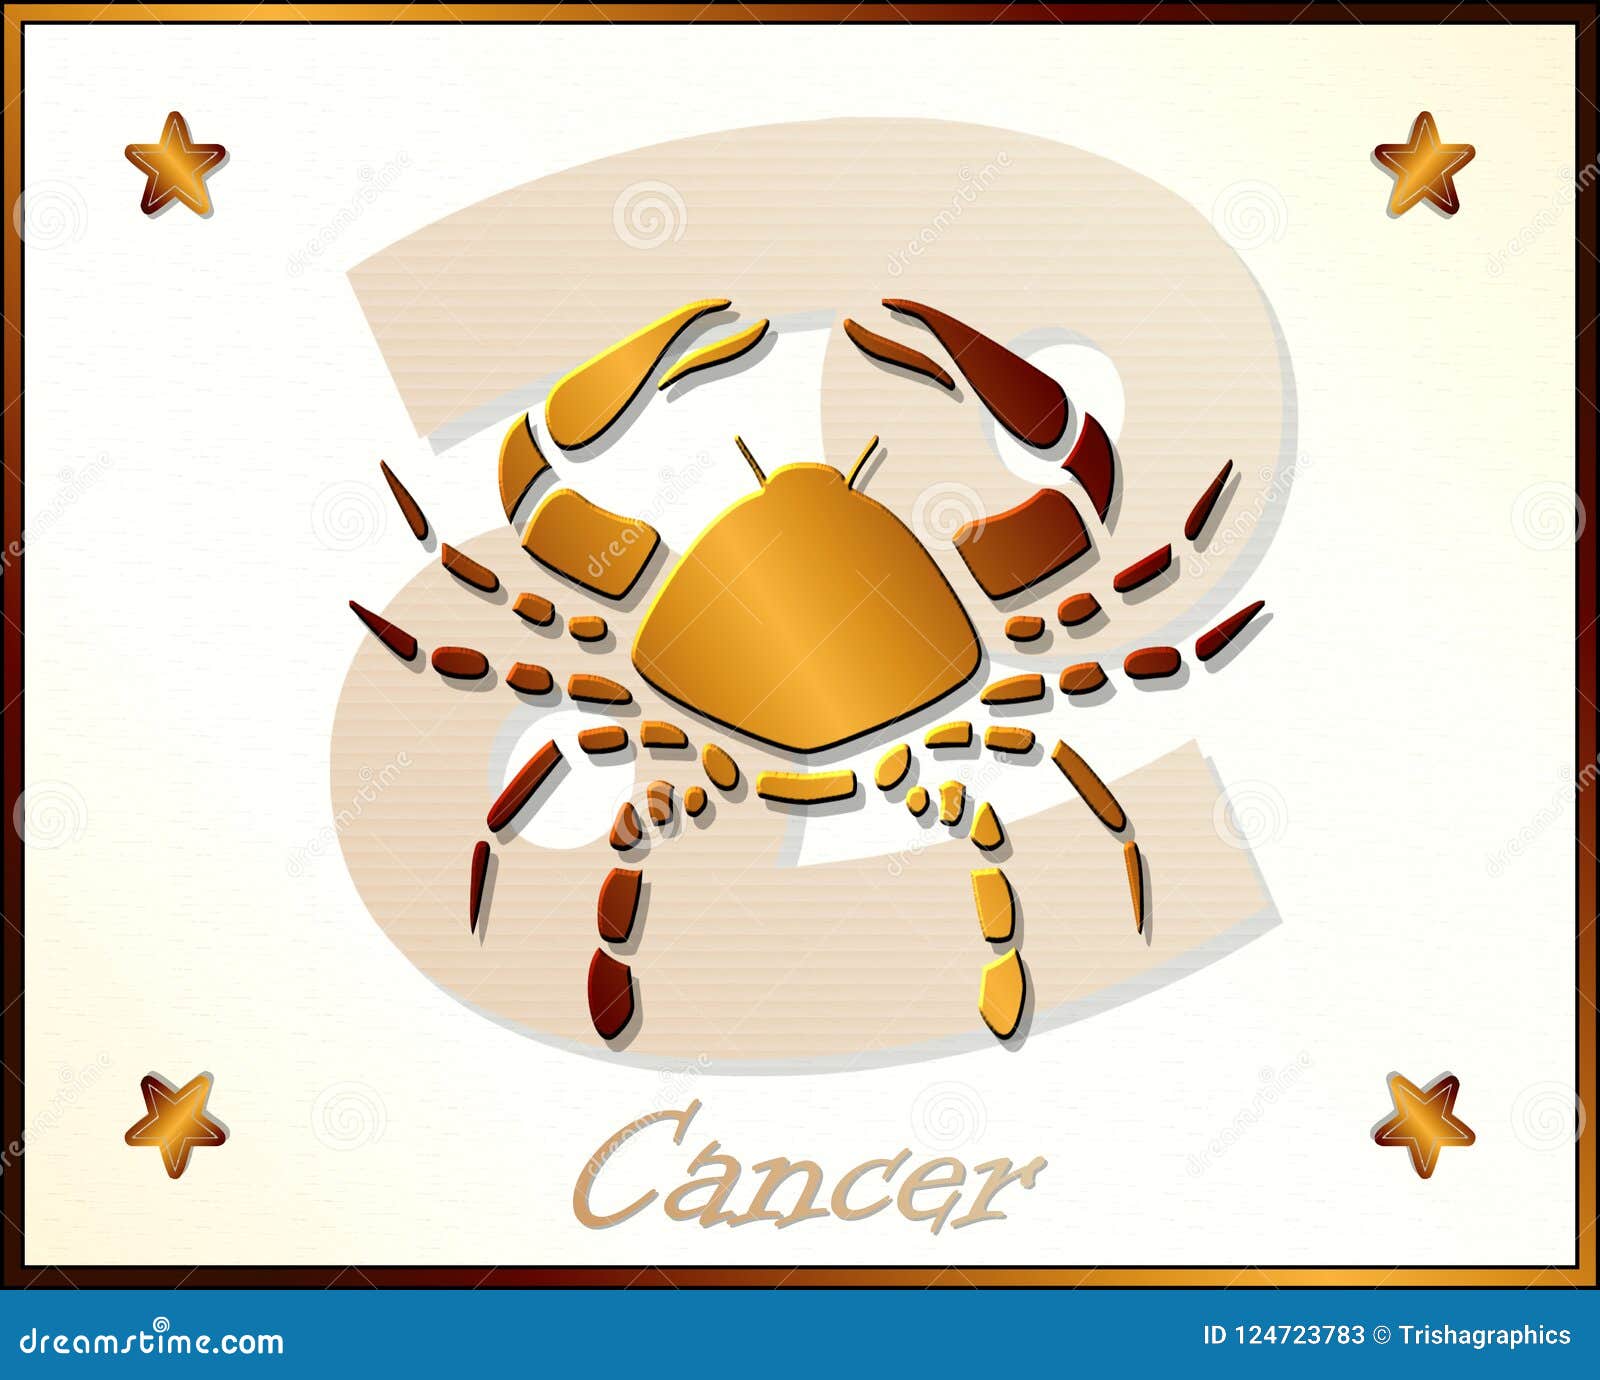 cancer zodiac star sign